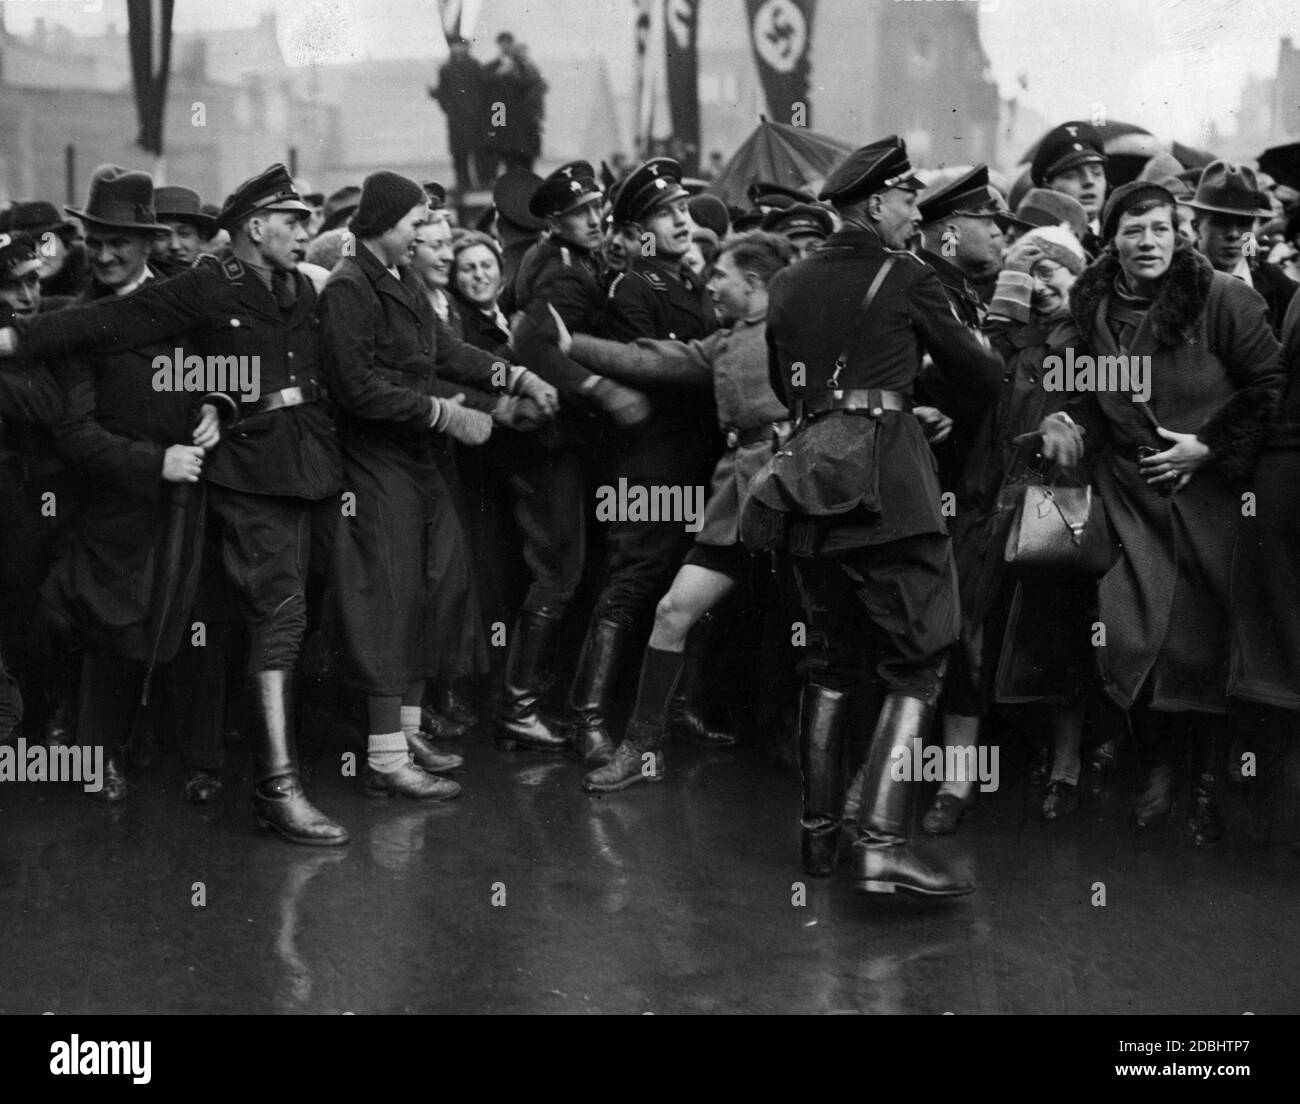 Lors des célébrations de l'annexion de la région de Saar au Reich allemand, la foule enthousiaste est retenue par les membres SS. Banque D'Images